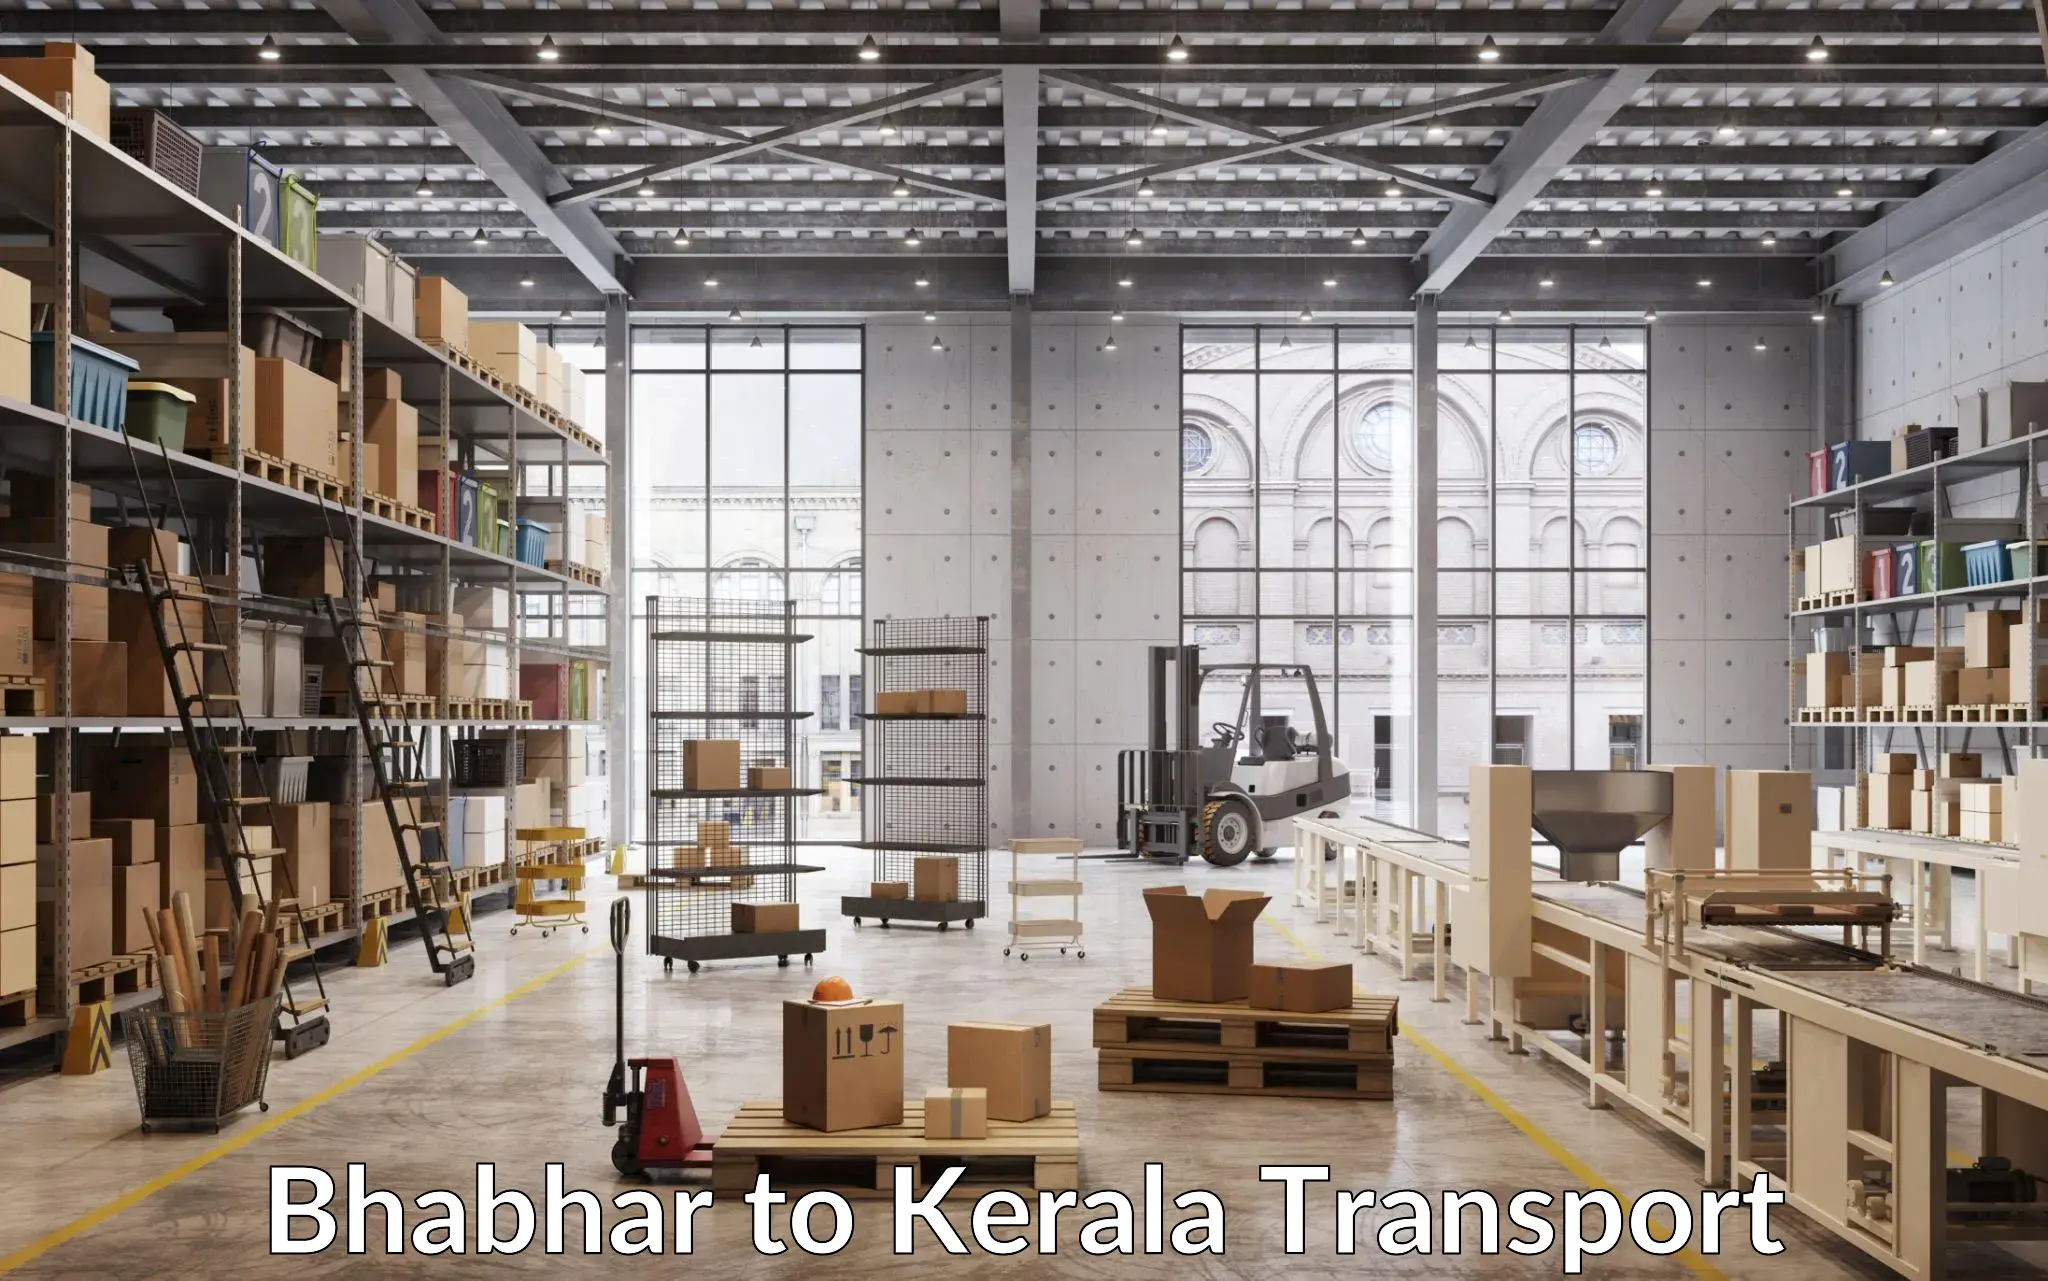 Commercial transport service Bhabhar to Kalluvathukkal